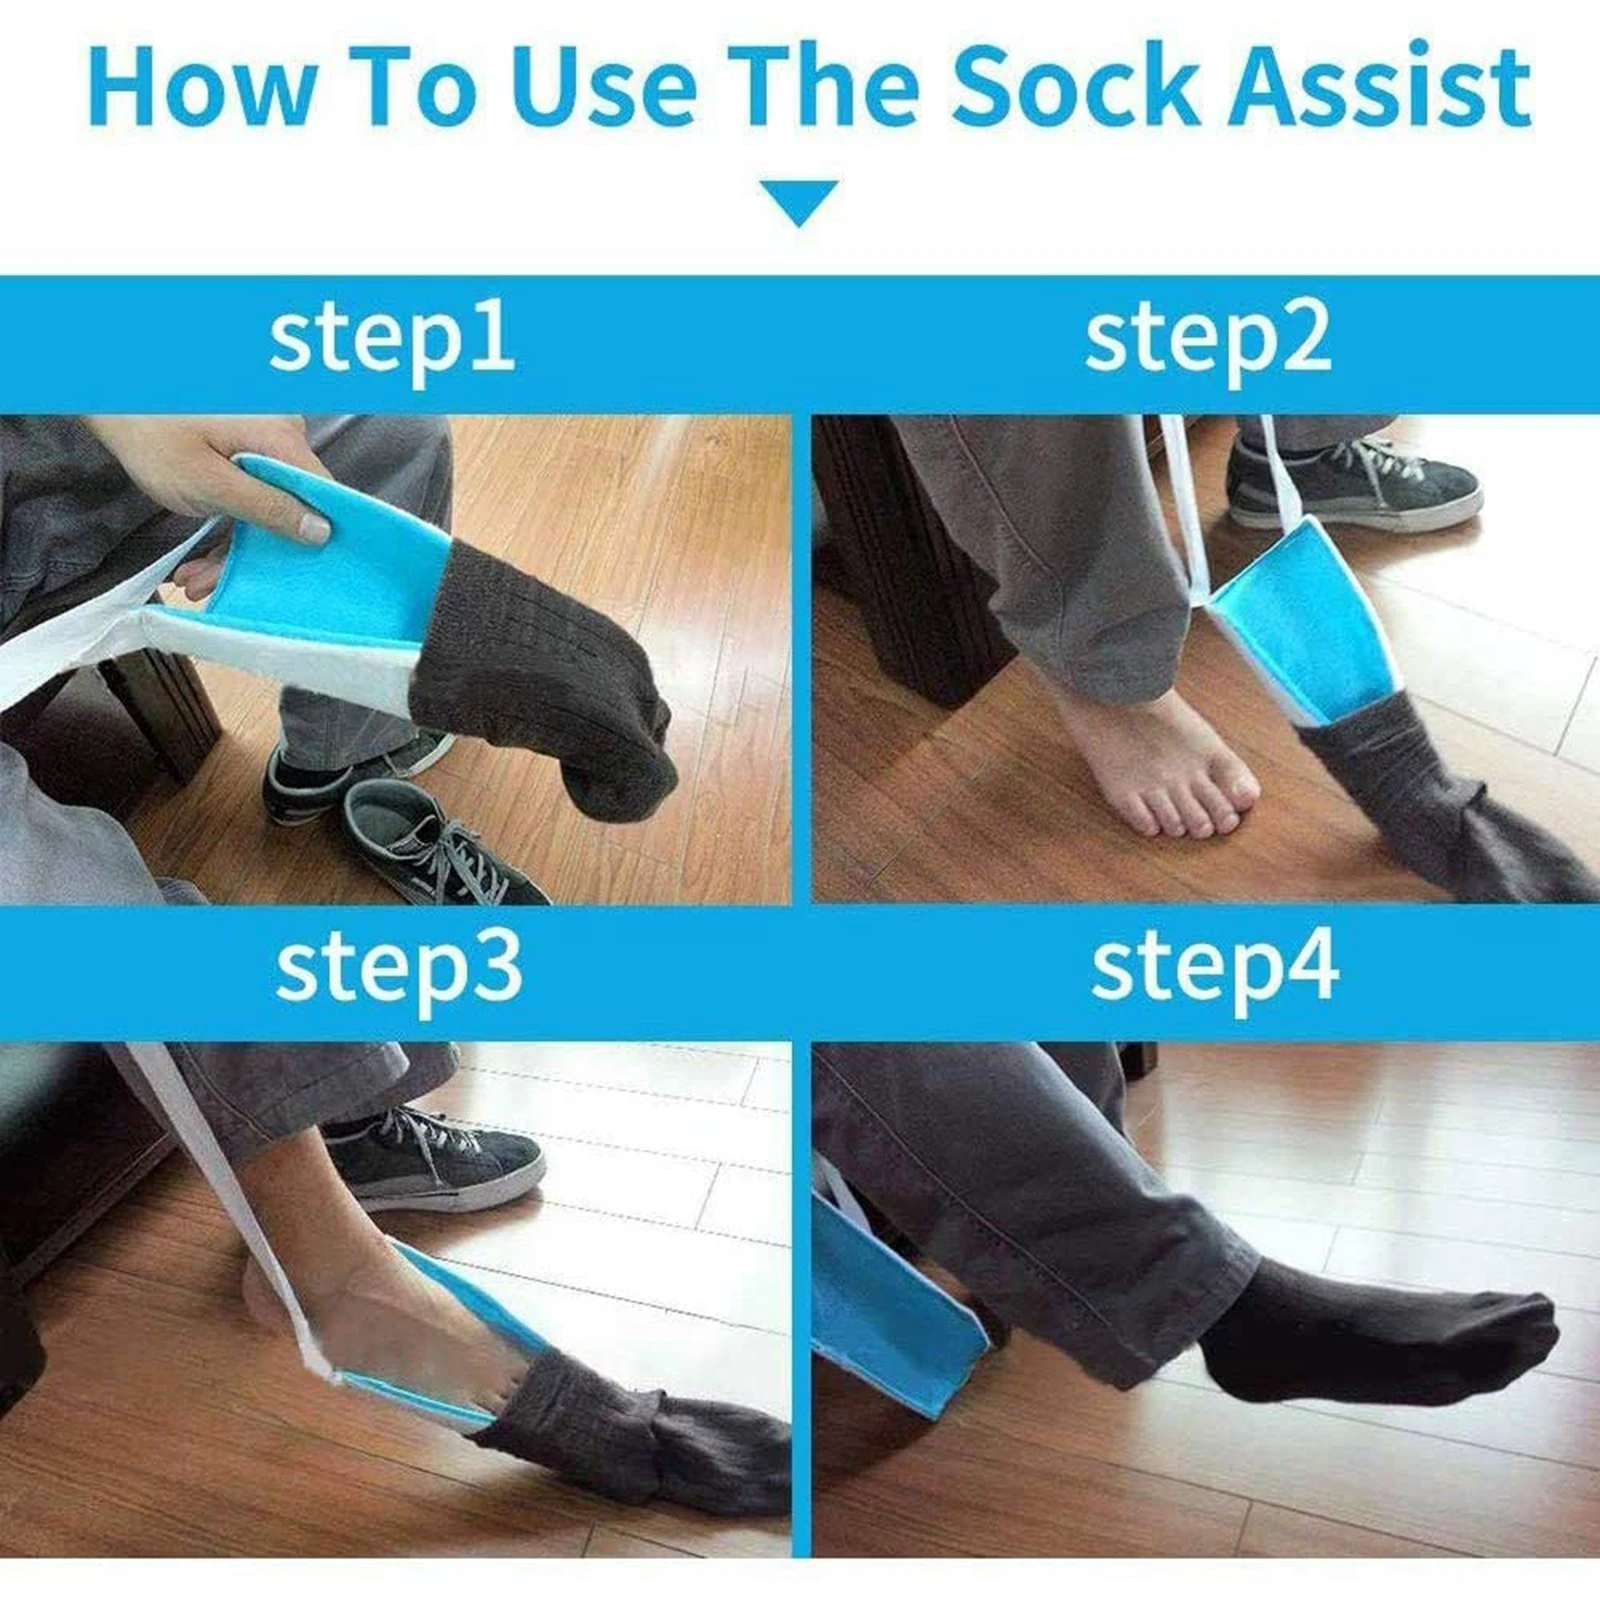 Flexible Sock Aid Kit Slider Sock Helper Aide Tool for Putting on Socks Men Women Elderly Sock Assist Device Sock Puller images - 6